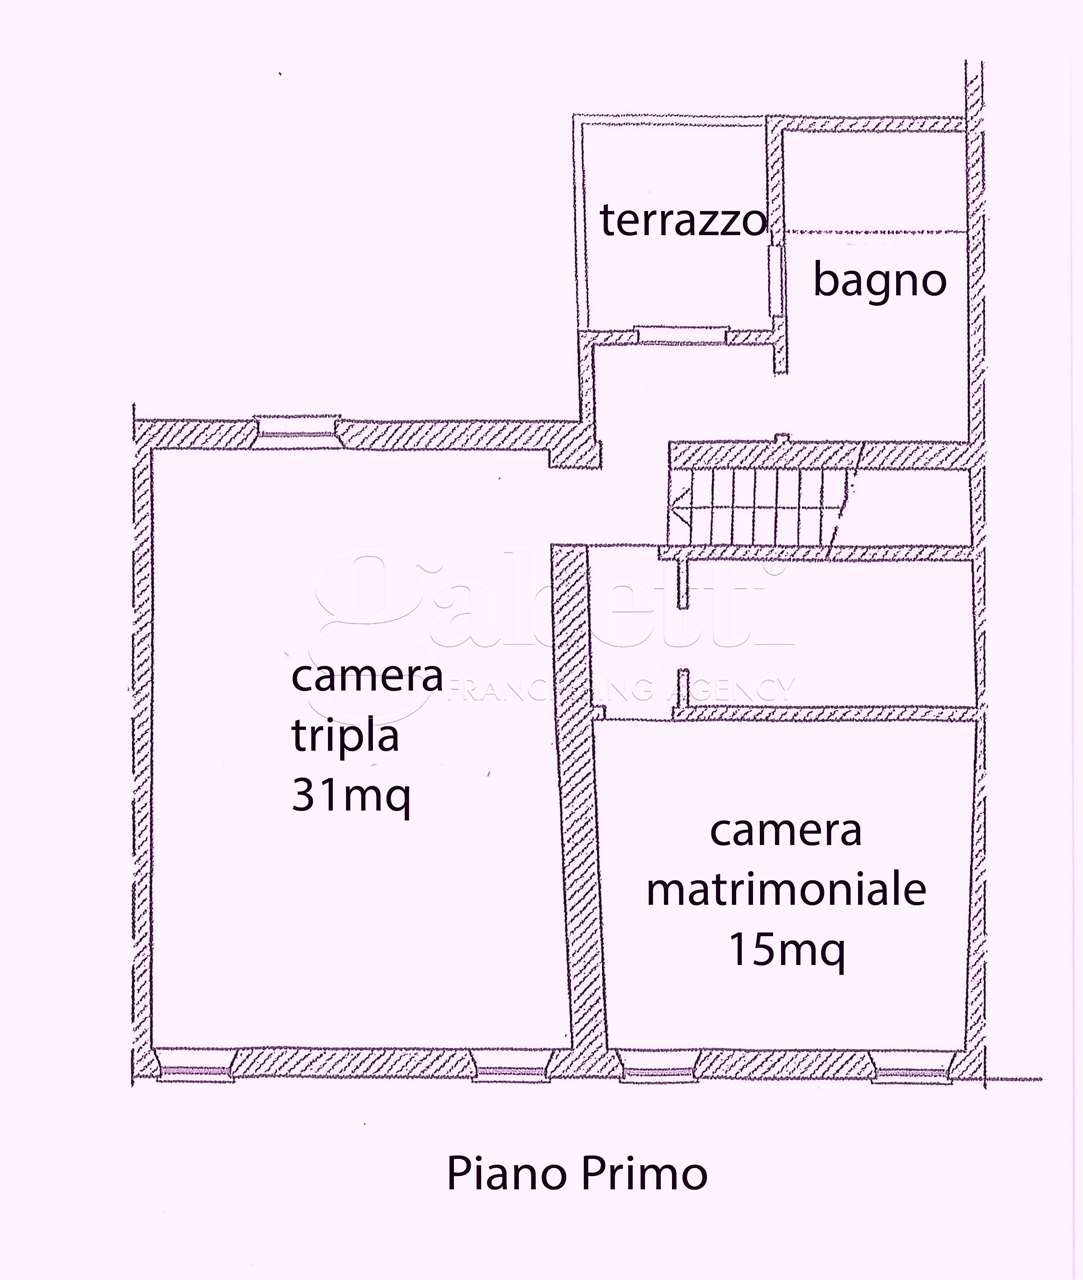 Porzione di casa in vendita a Ferrara (FE)